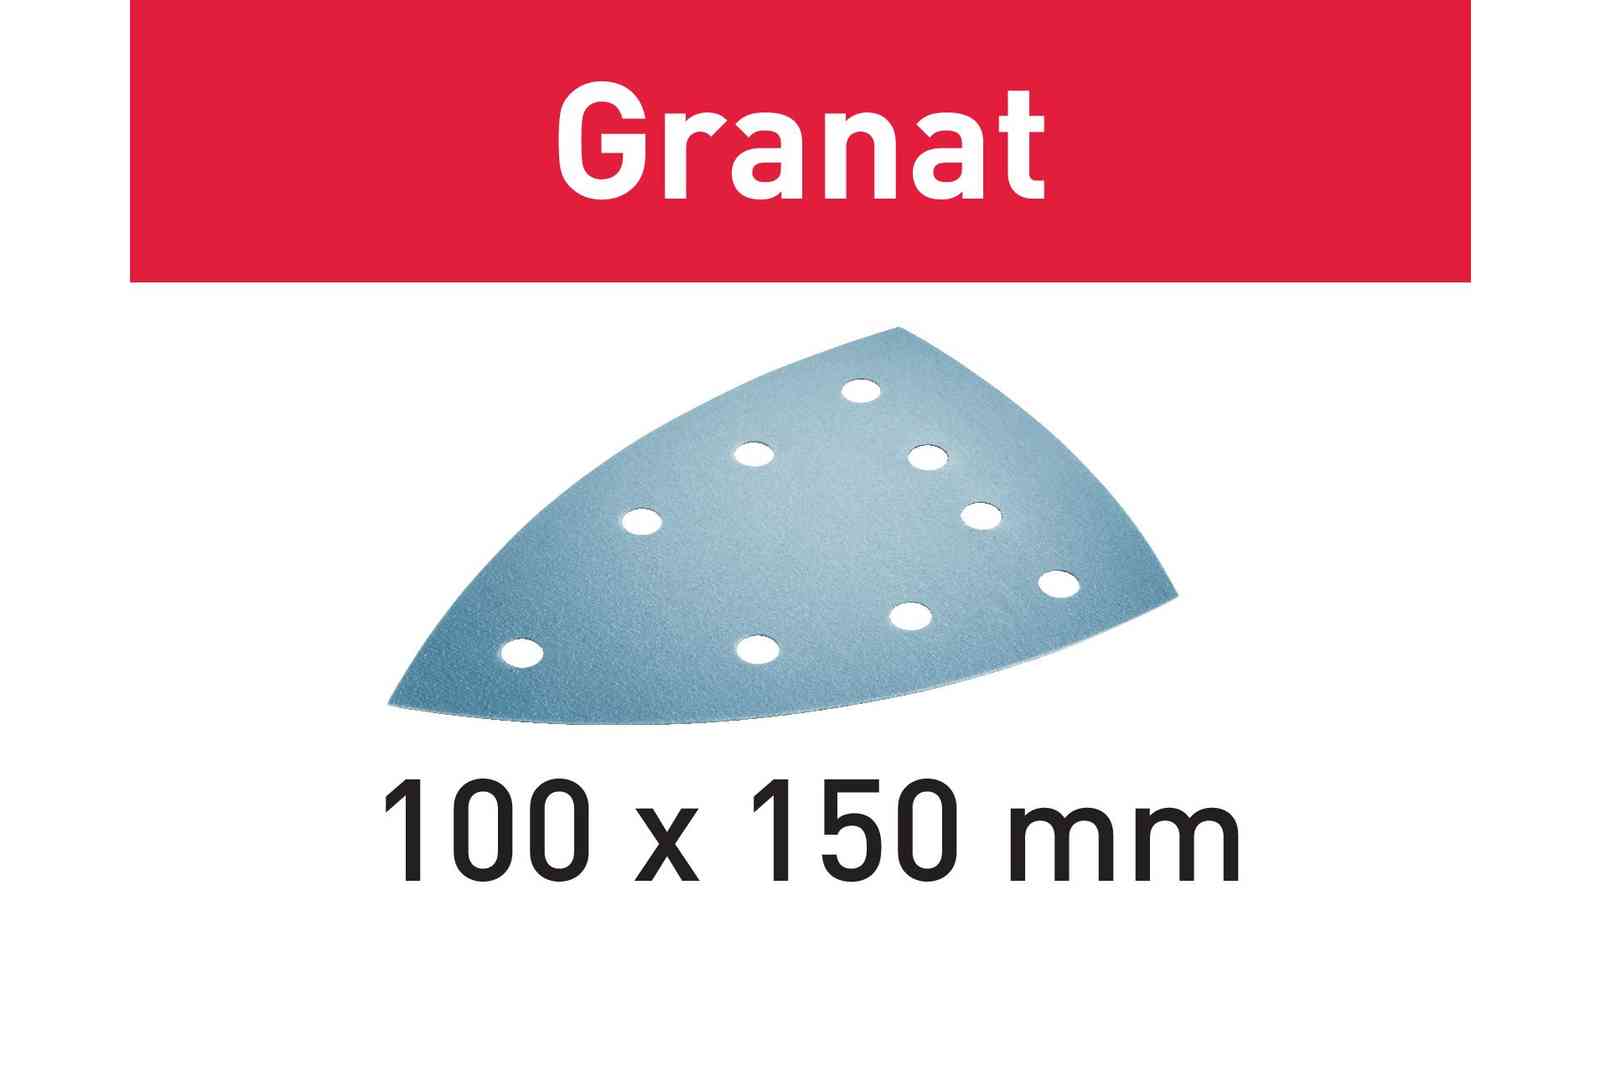 Festool Schuurpapier STF DELTA/9 P80 GR/10 Granat 577539